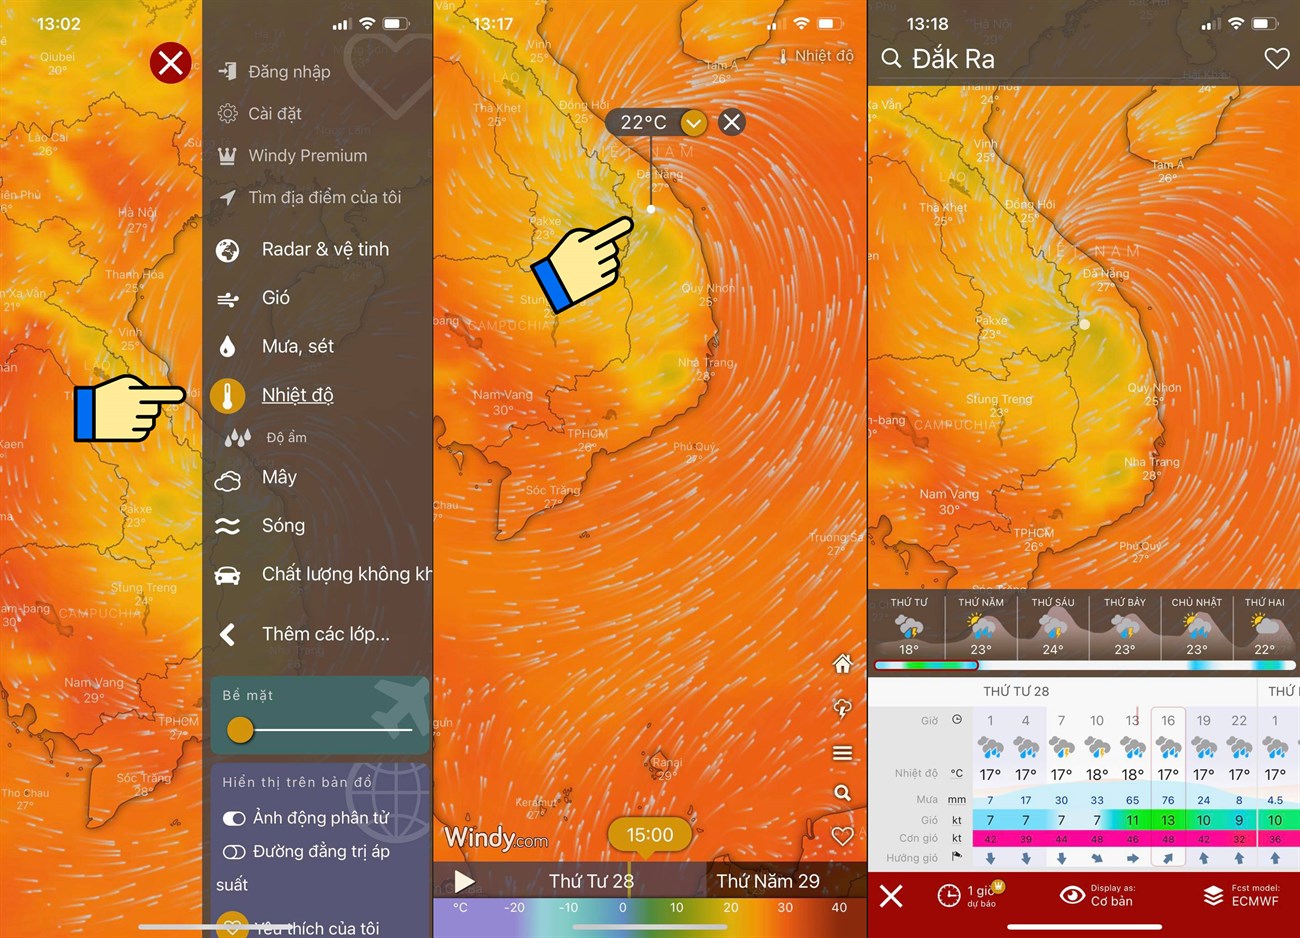 Xem bản đồ dự báo thời tiết qua vệ tinh TP Hồ Chí Minh giúp bạn cập nhật thông tin thời tiết chính xác và nhanh chóng hơn bao giờ hết. Bạn sẽ nhận được thông tin về tình trạng mưa, bão và ngập lụt tại từng khu vực, giúp cho bạn chuẩn bị tích cực và đối phó với thời tiết thay đổi.